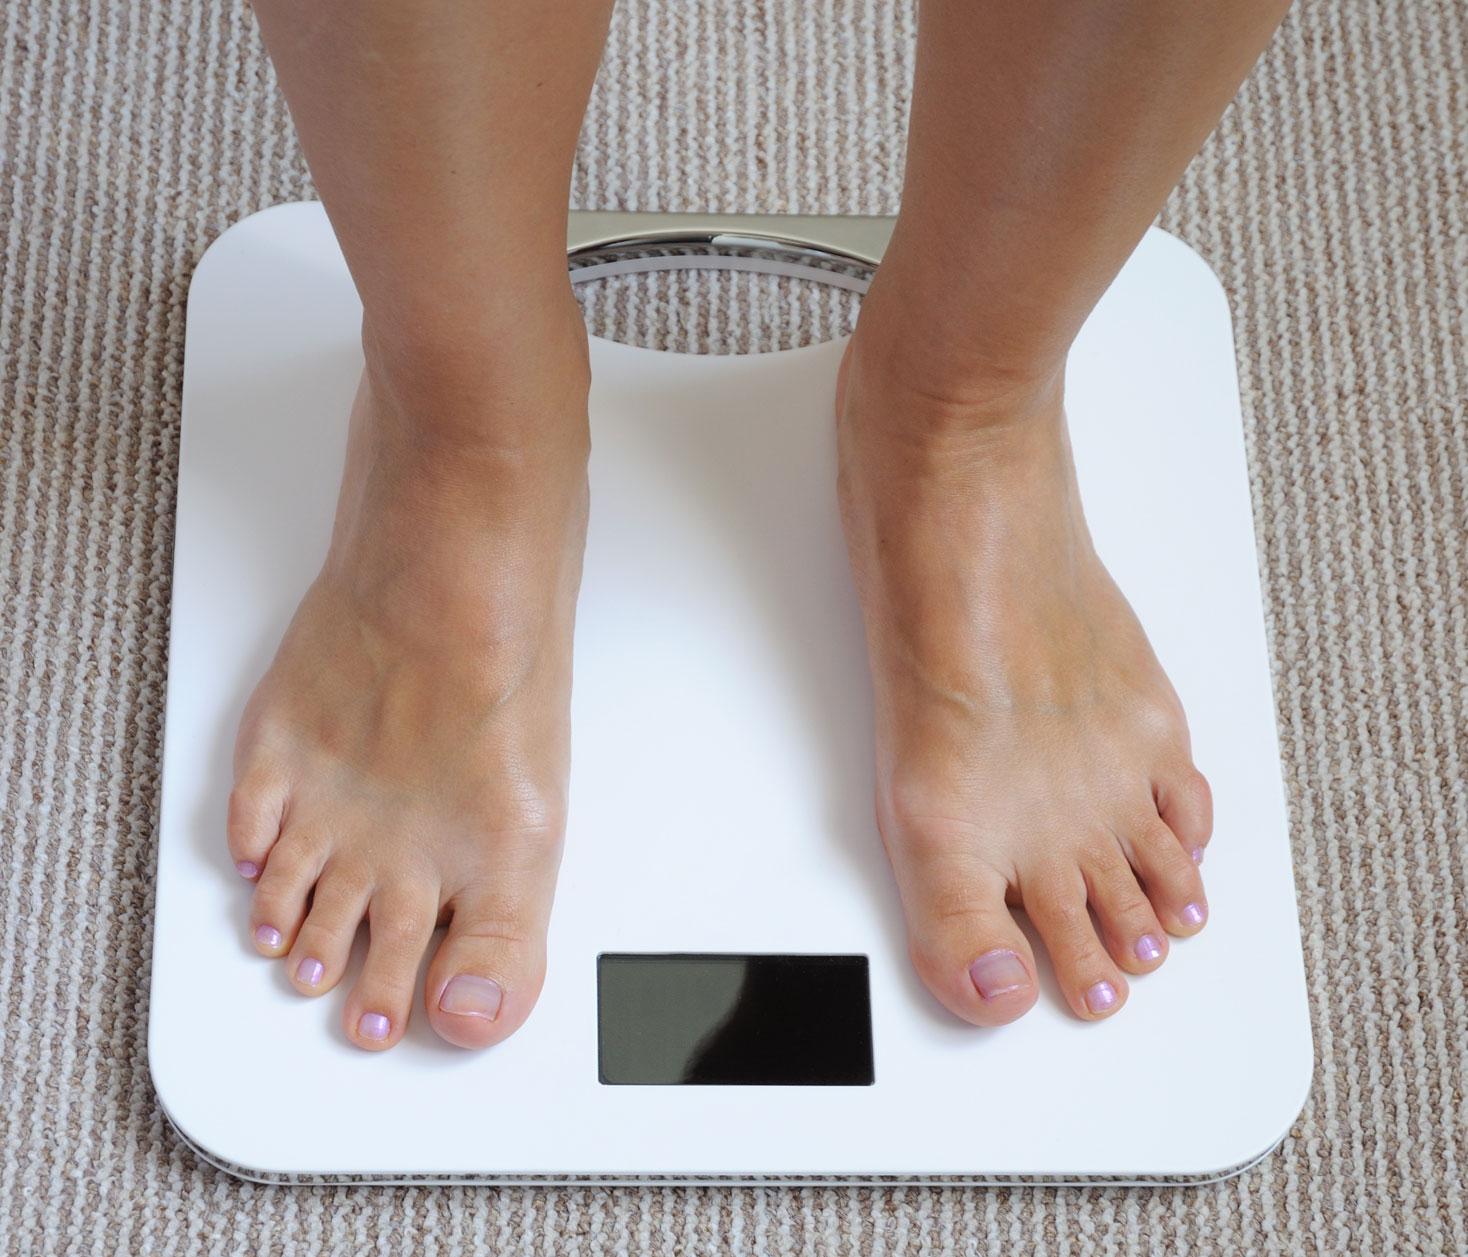 Genom att väga dig oftare får du mer kontroll över din vikt.